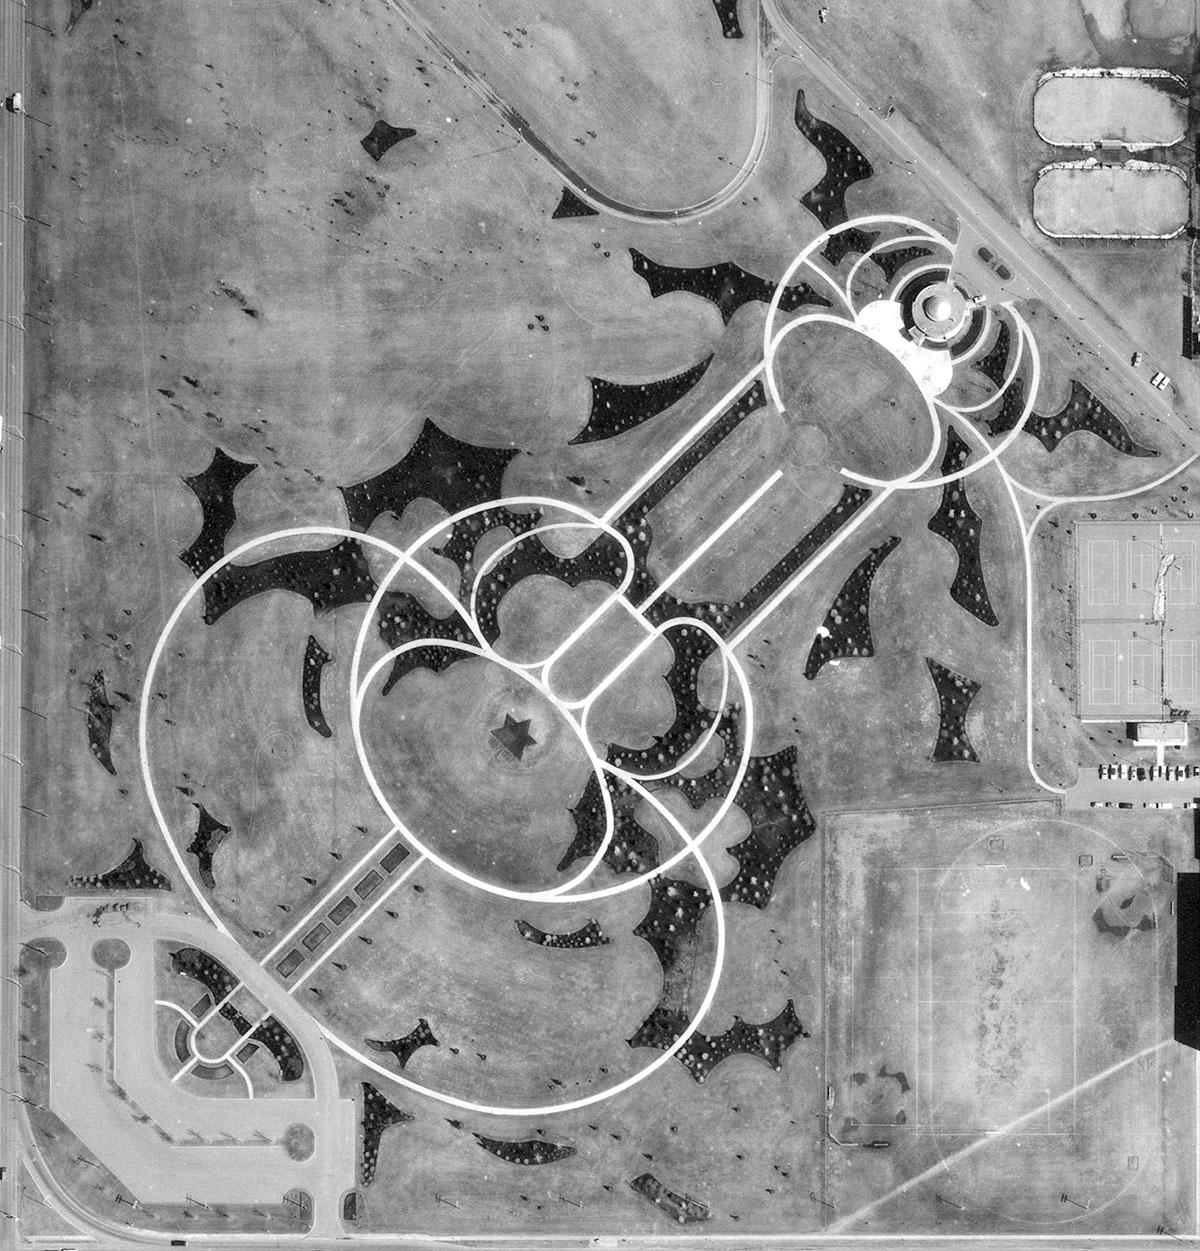 Coronation Park [1967 Vol 8 No 81, detail]